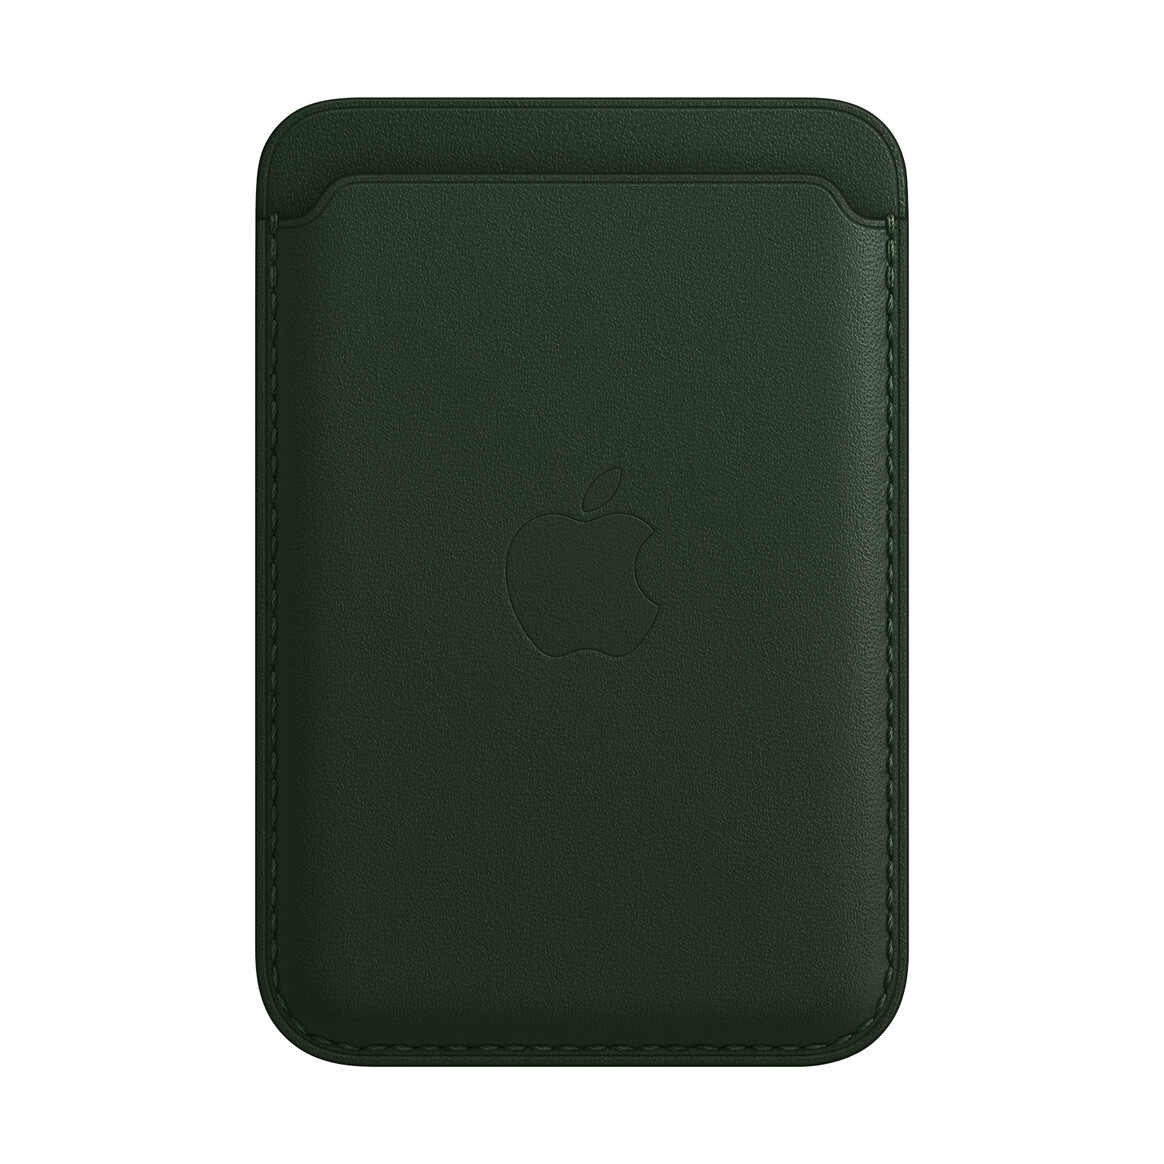 <h1>Apple iPhone Leder Wallet mit MagSafe, schwarzgrün</h1>